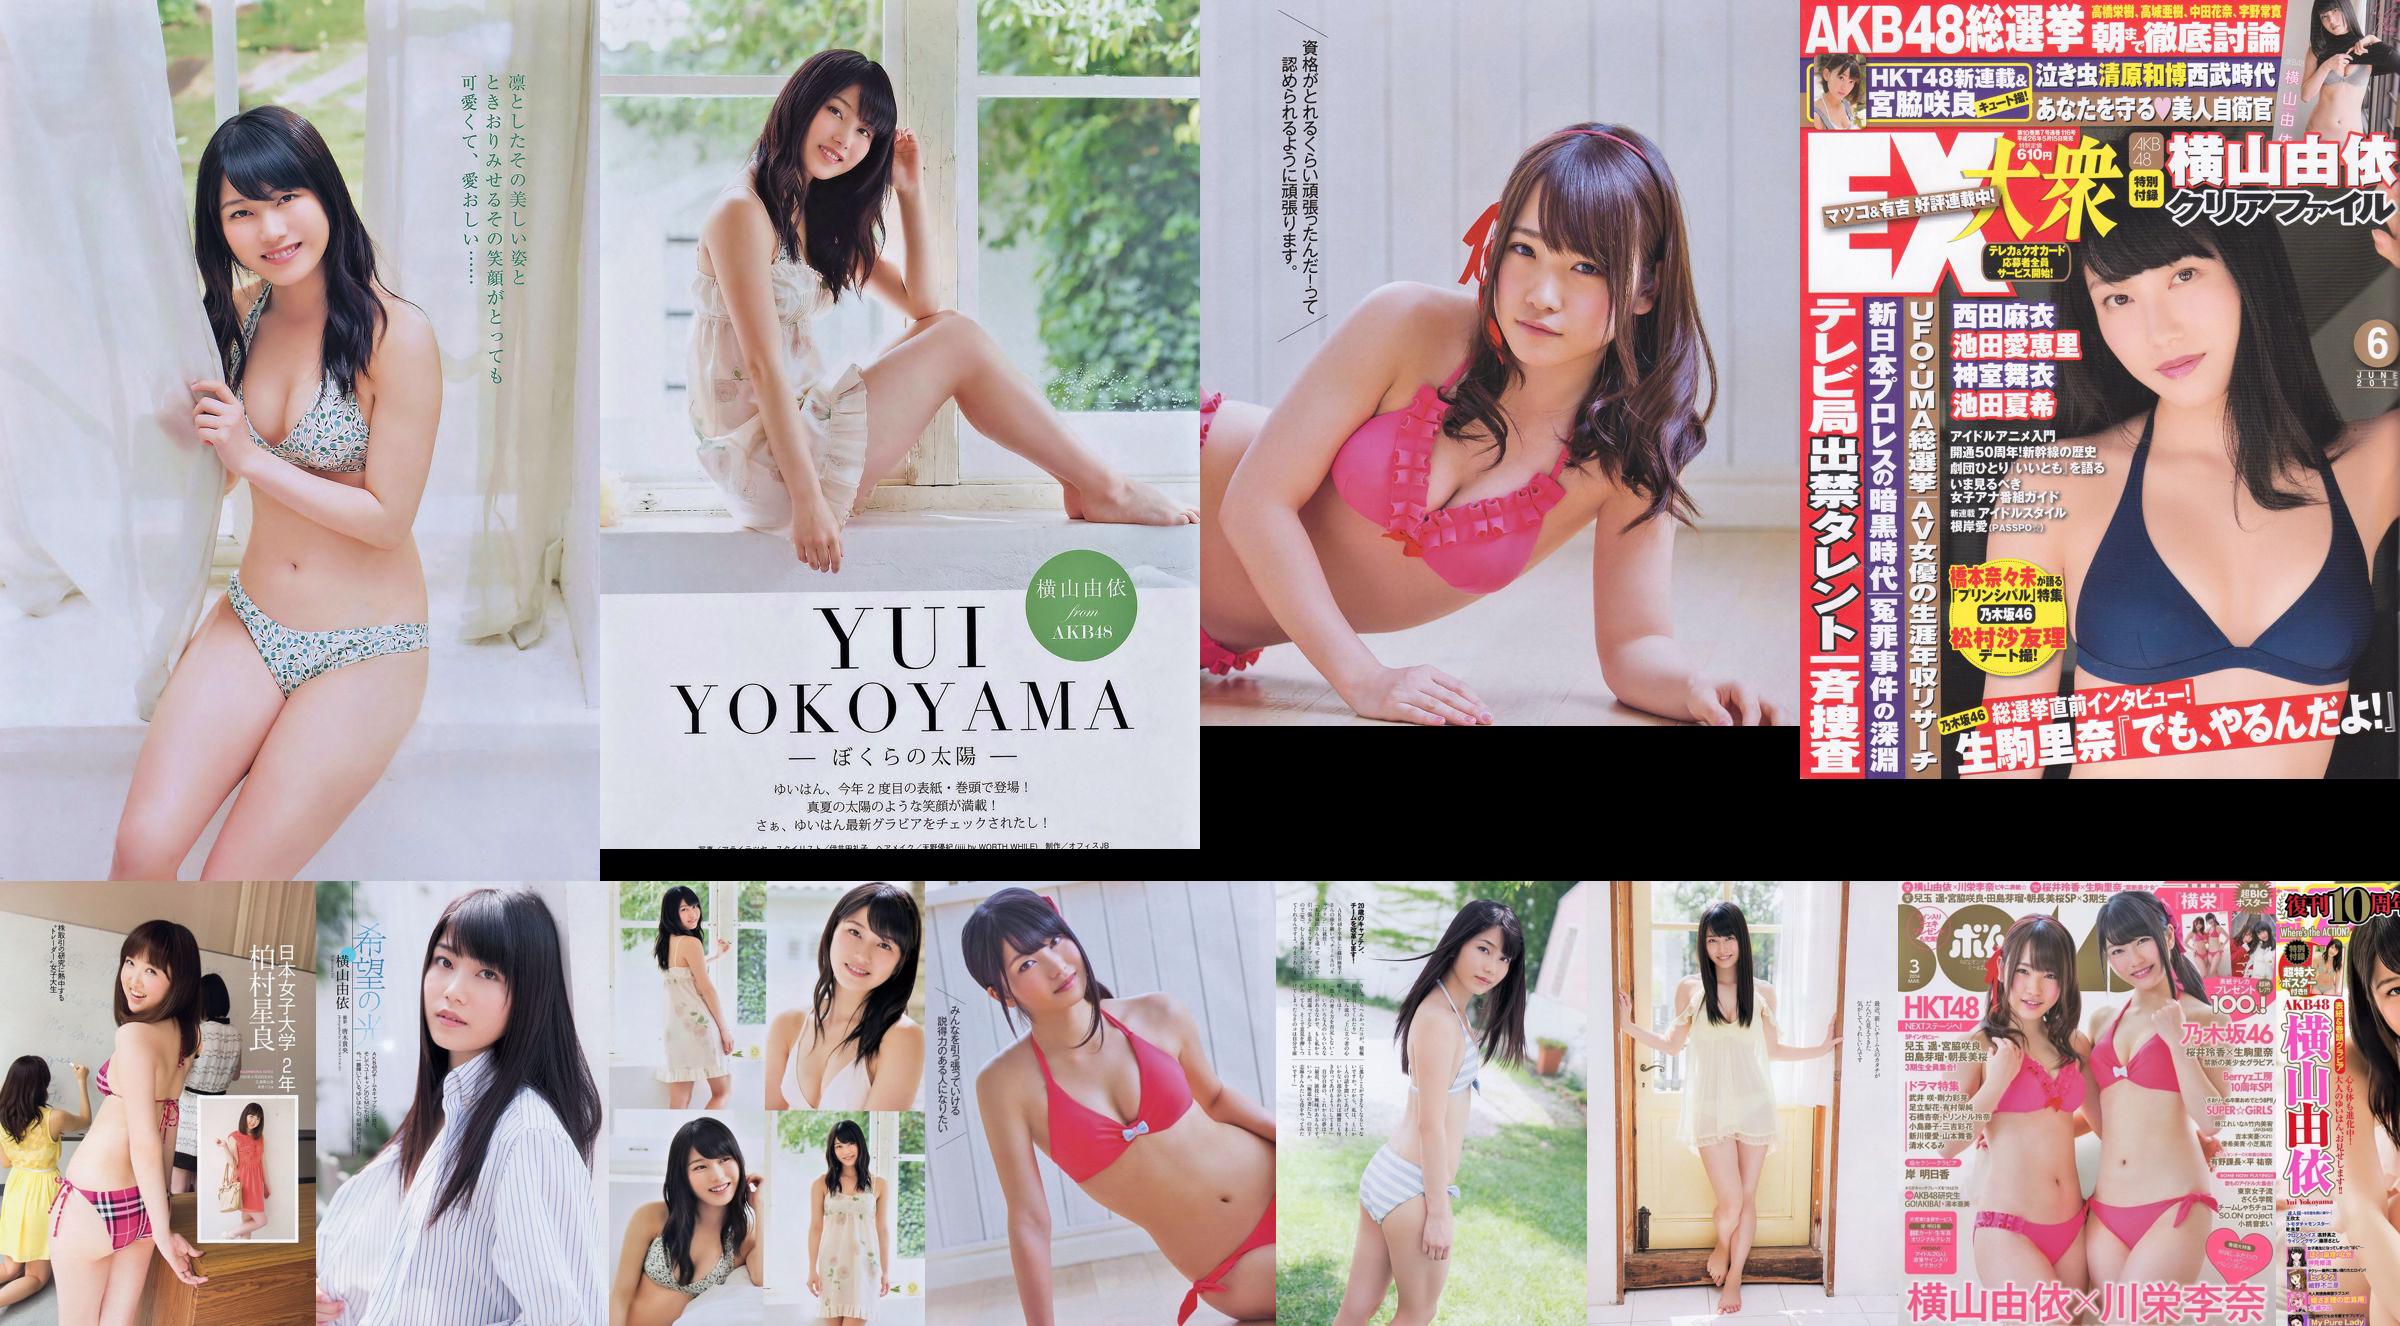 Momoiro Clover Z Yui Yokoyama Yua Shinkawa Mio Uema Anri Sugihara Kumi Yagami [Wöchentlicher Playboy] 2013 Nr. 20 Foto Moshi No.7790a7 Seite 11